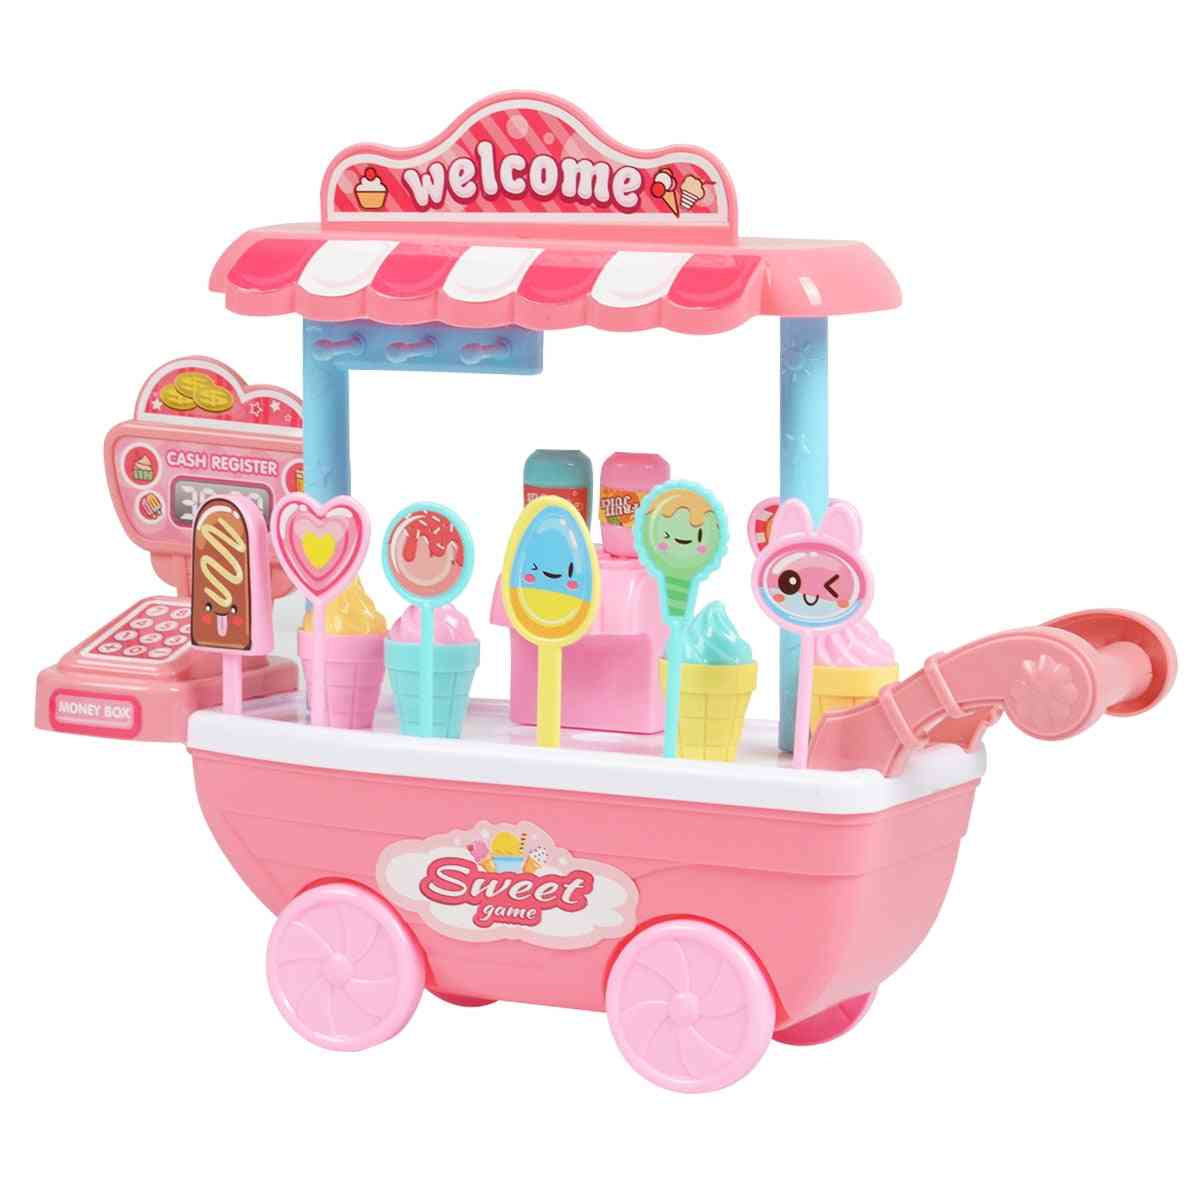 Children Role Play, Educational Toy- Mini Candy Cart Detachable Icecream Shop Toy Cash Register Chrismas